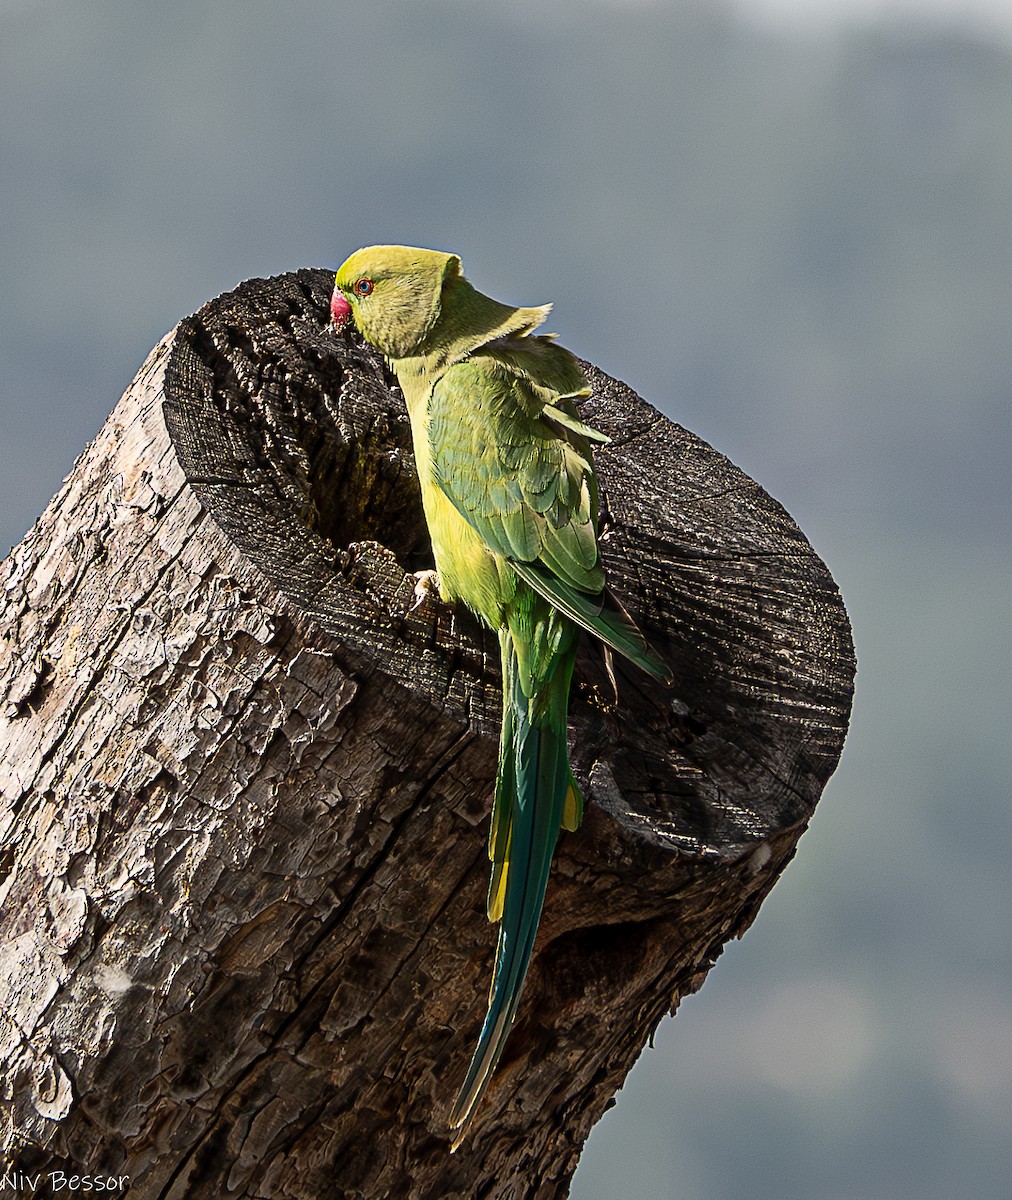 Rose-ringed Parakeet - Niv Bessor